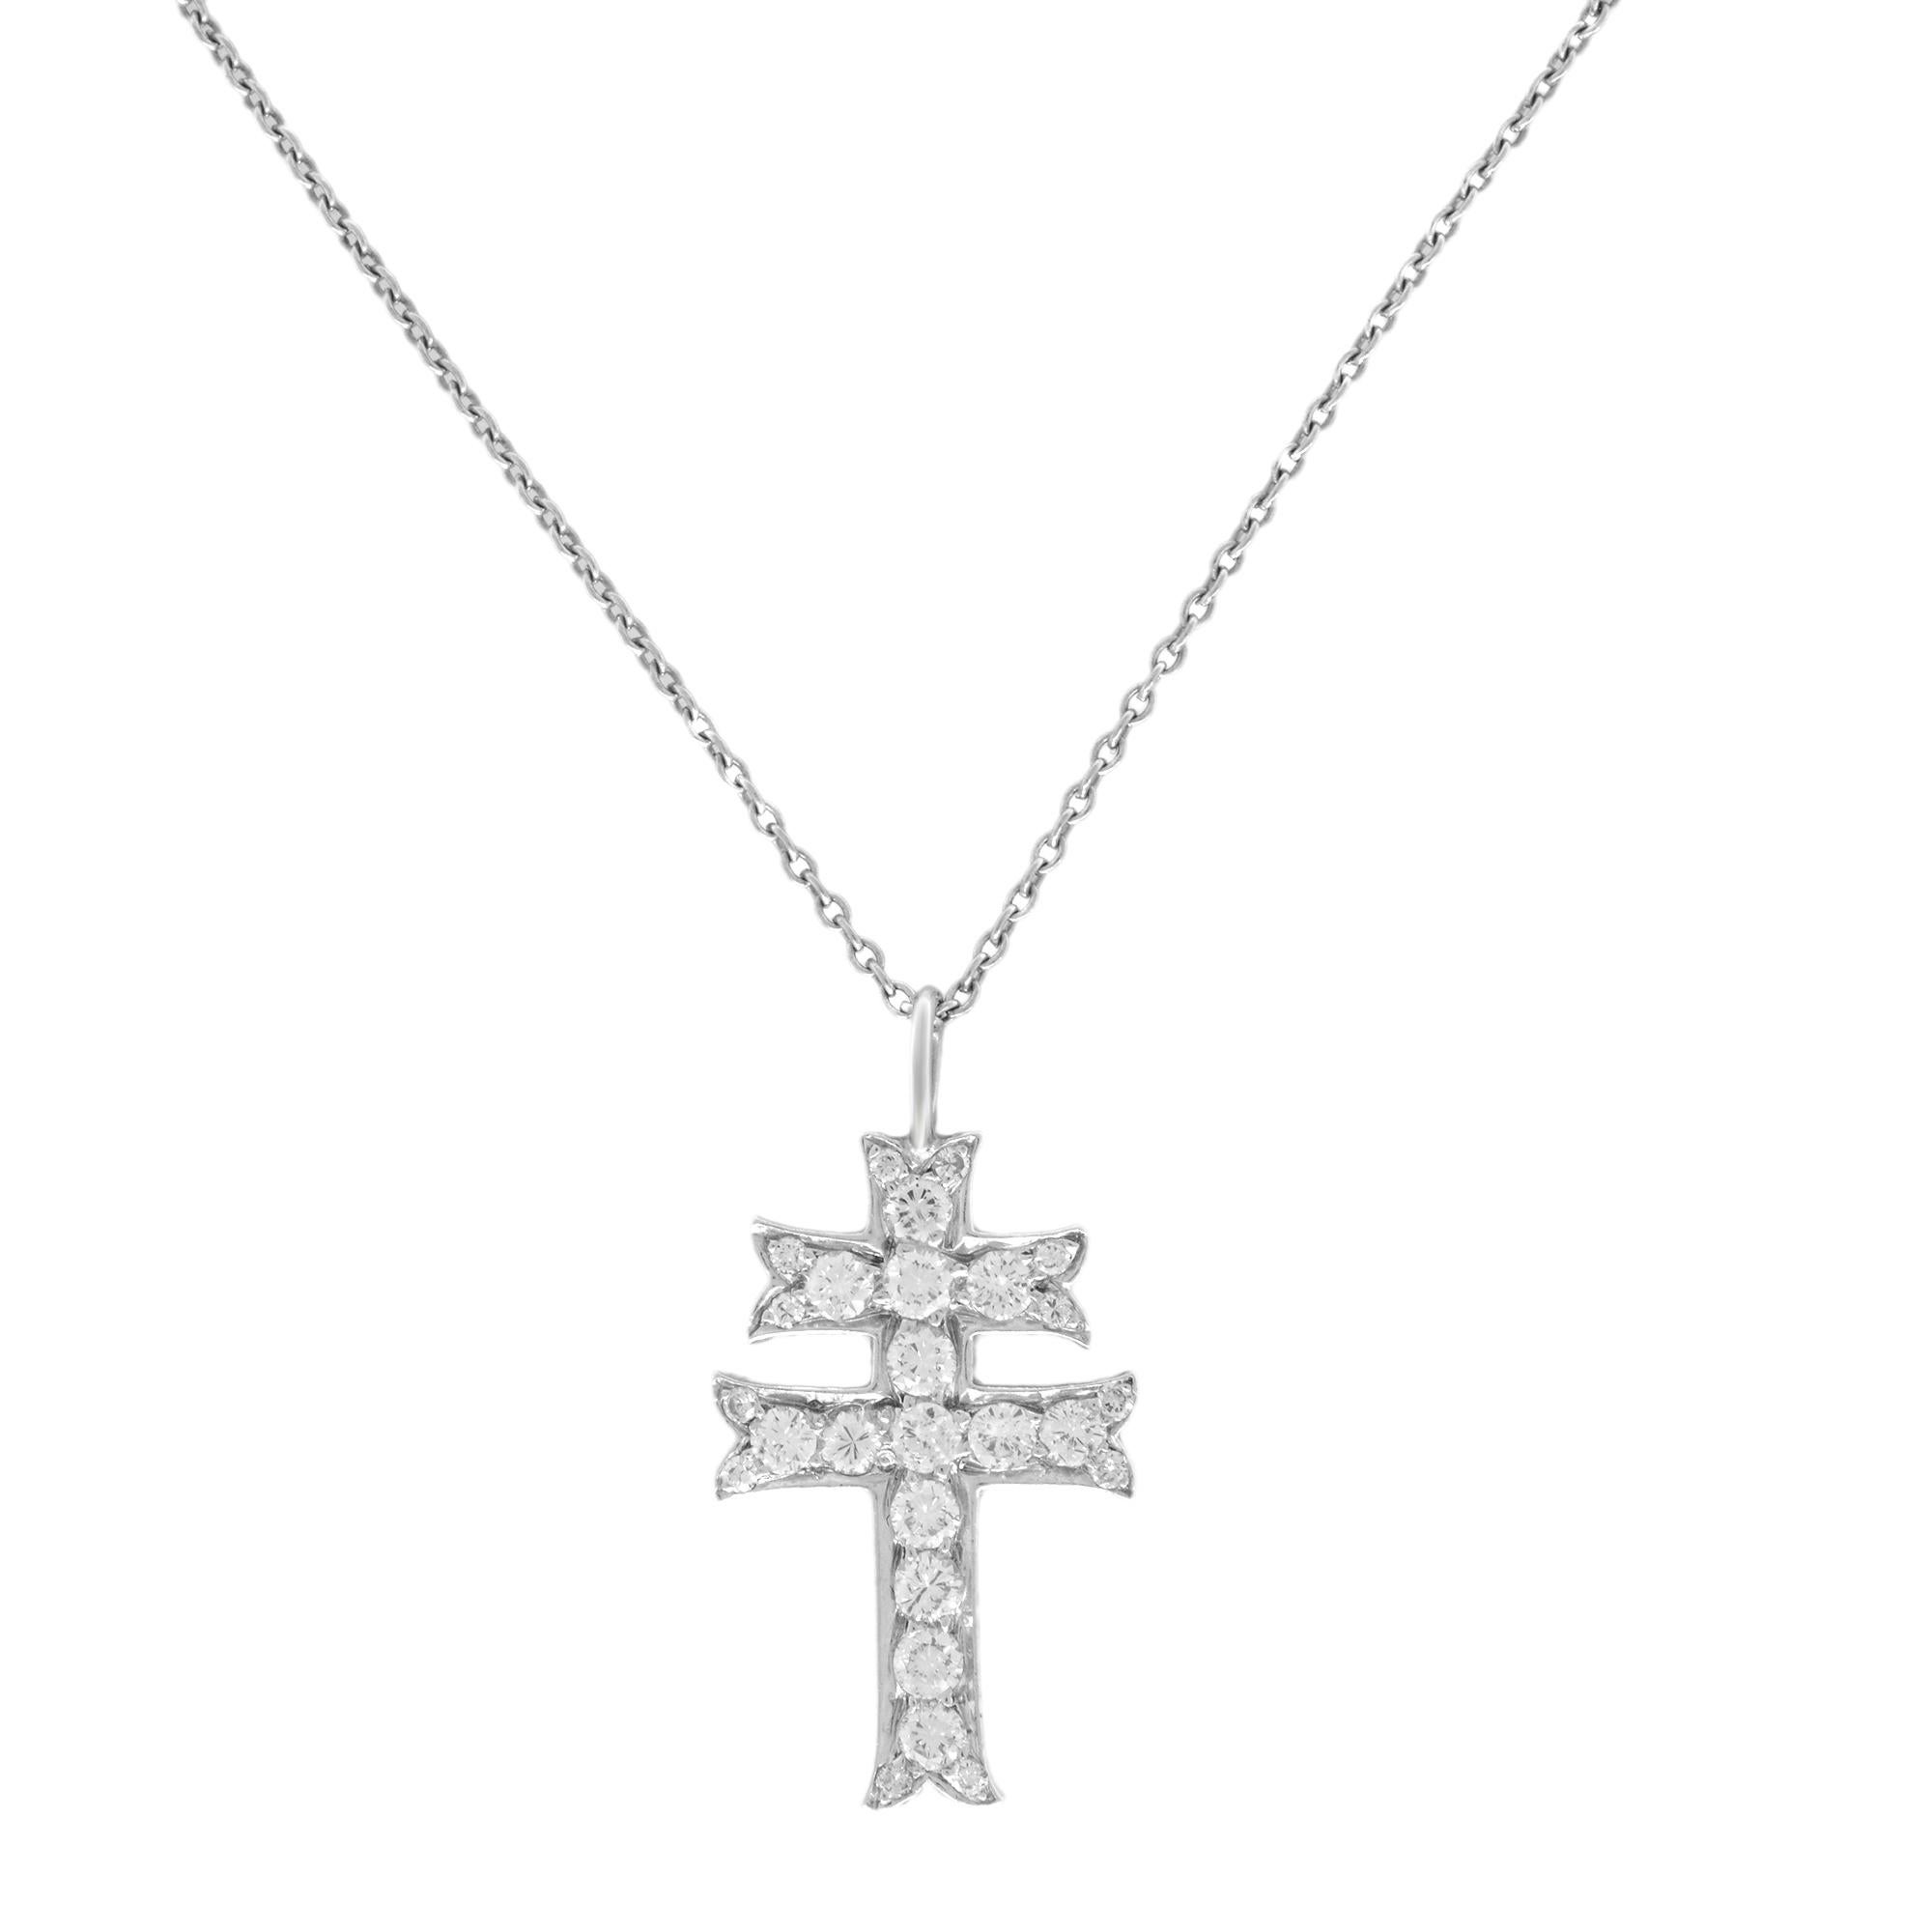 Round Cut Rachel Koen Diamond Cross Pendant Necklace Platinum 0.33Cttw 16 inches For Sale